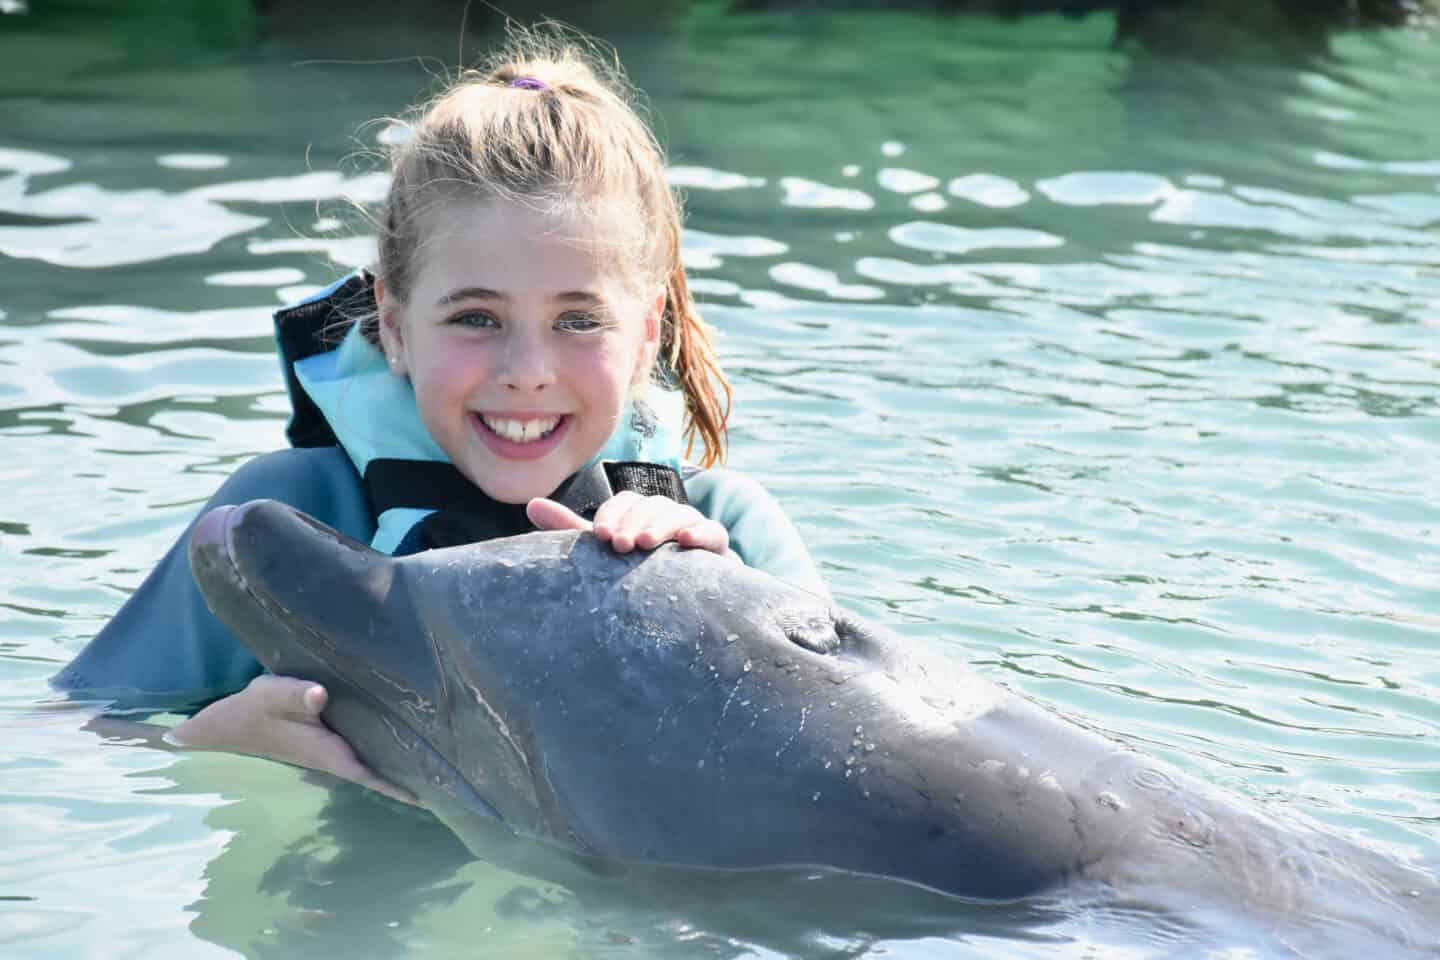 Our Key West Trip Part 3: Dolphin + Jet Ski Day